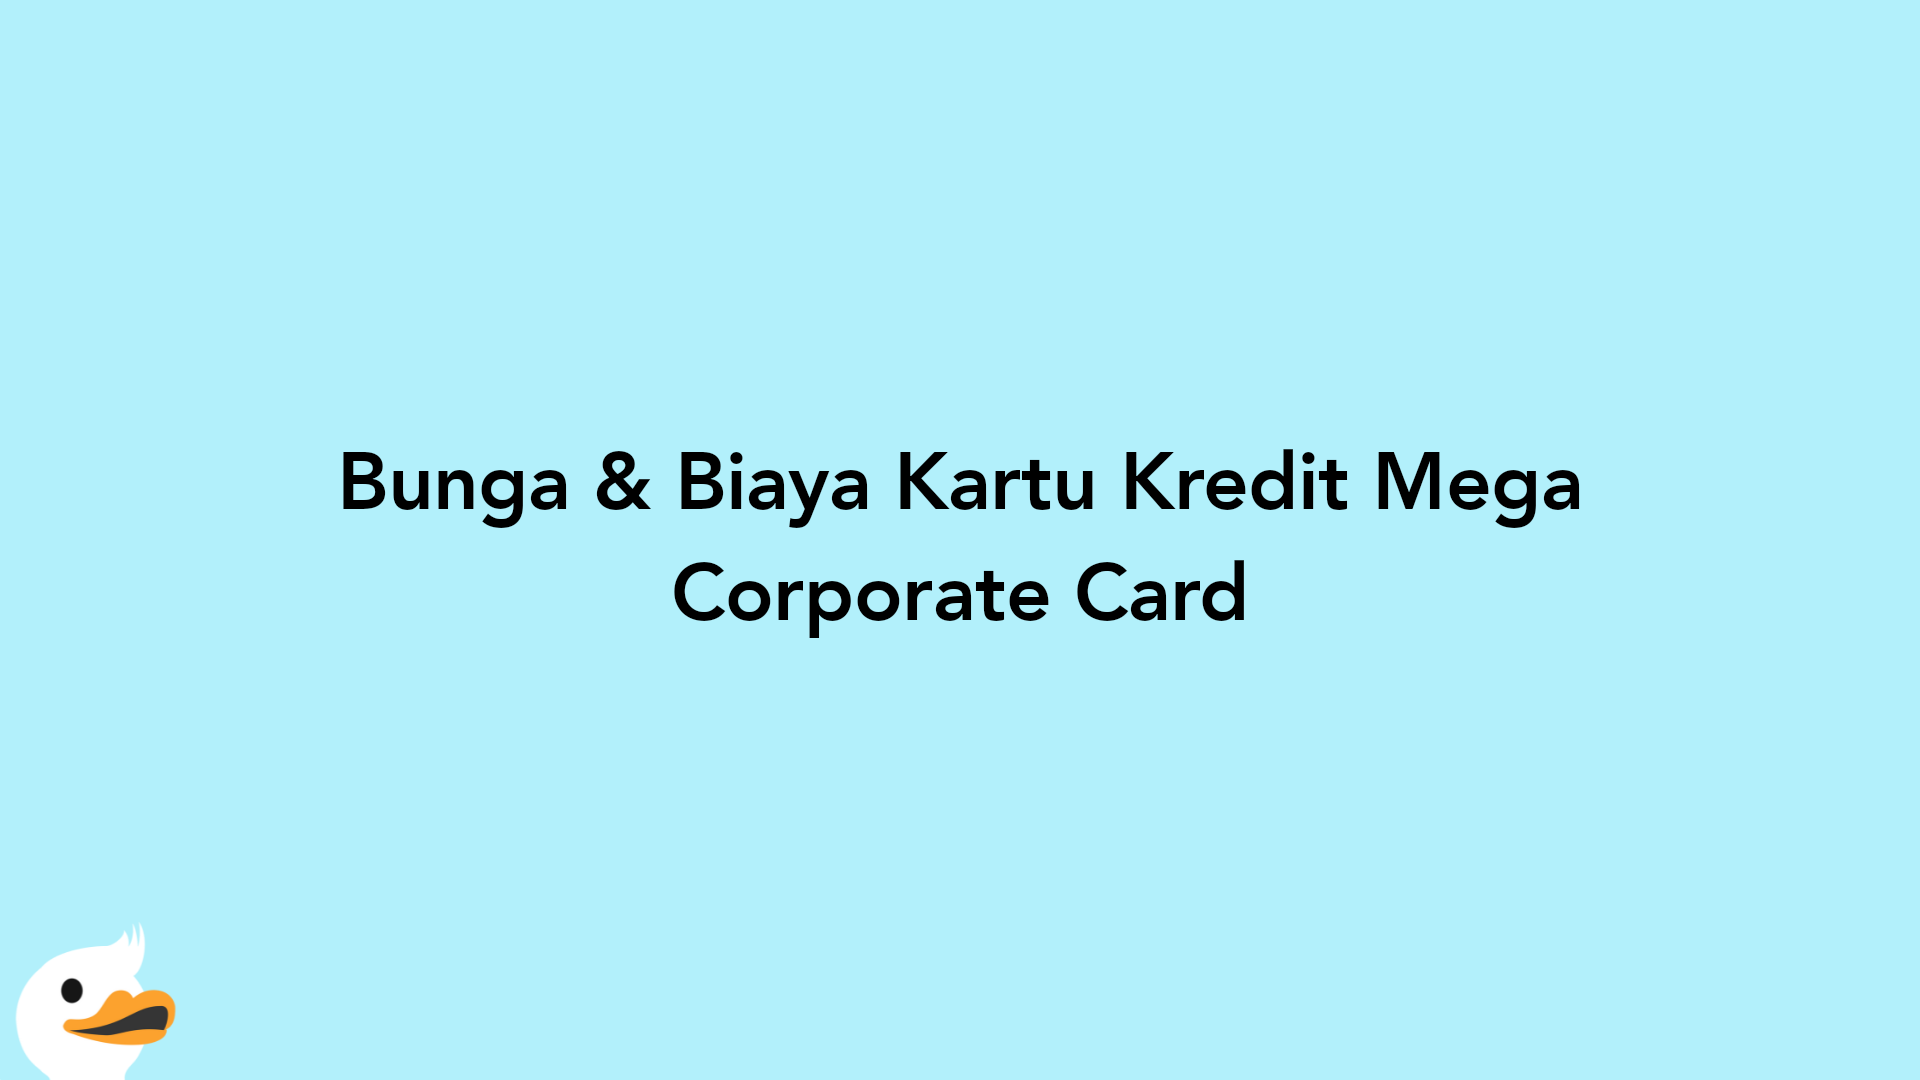 Bunga & Biaya Kartu Kredit Mega Corporate Card